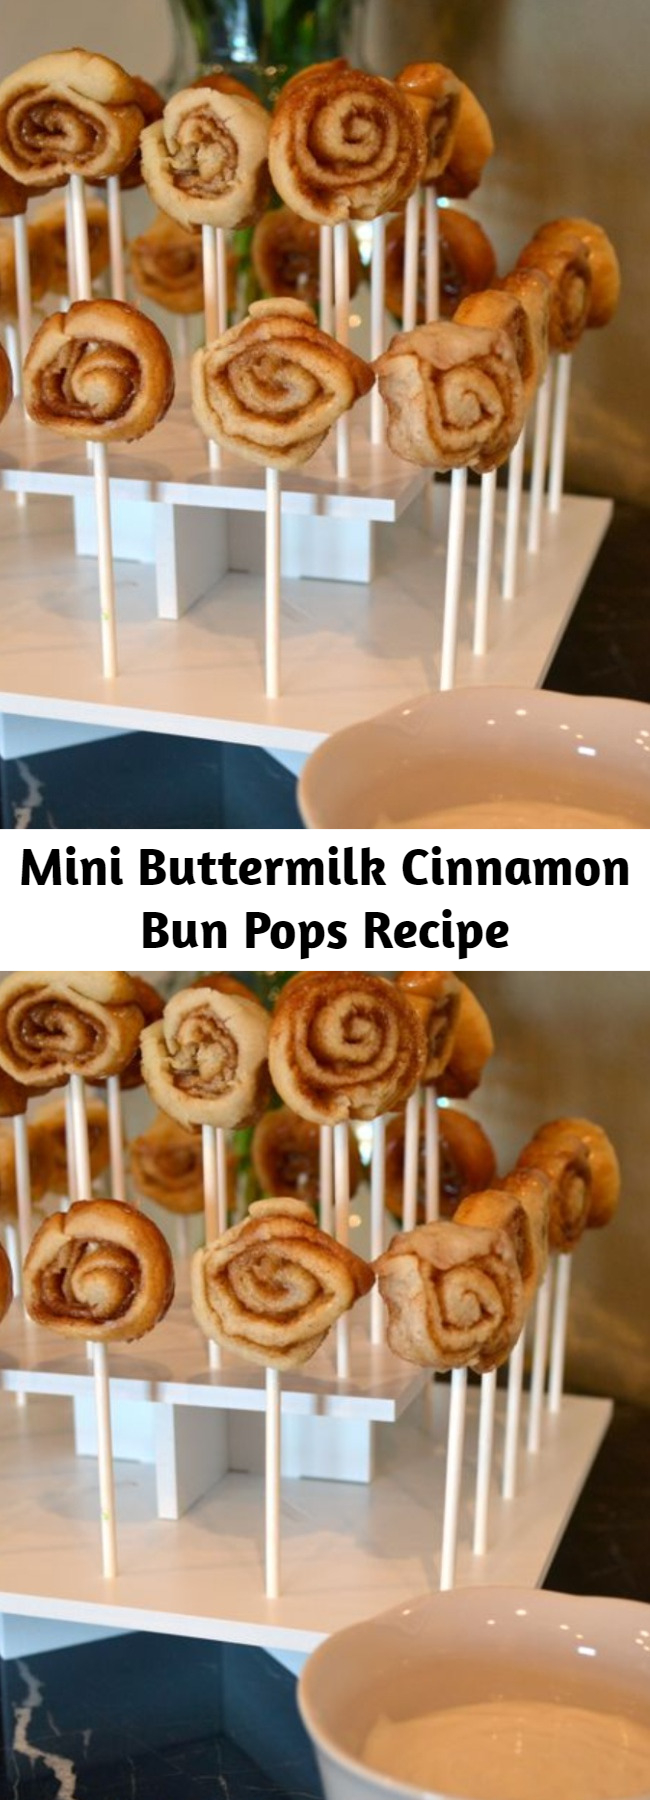 Mini Buttermilk Cinnamon Bun Pops Recipe